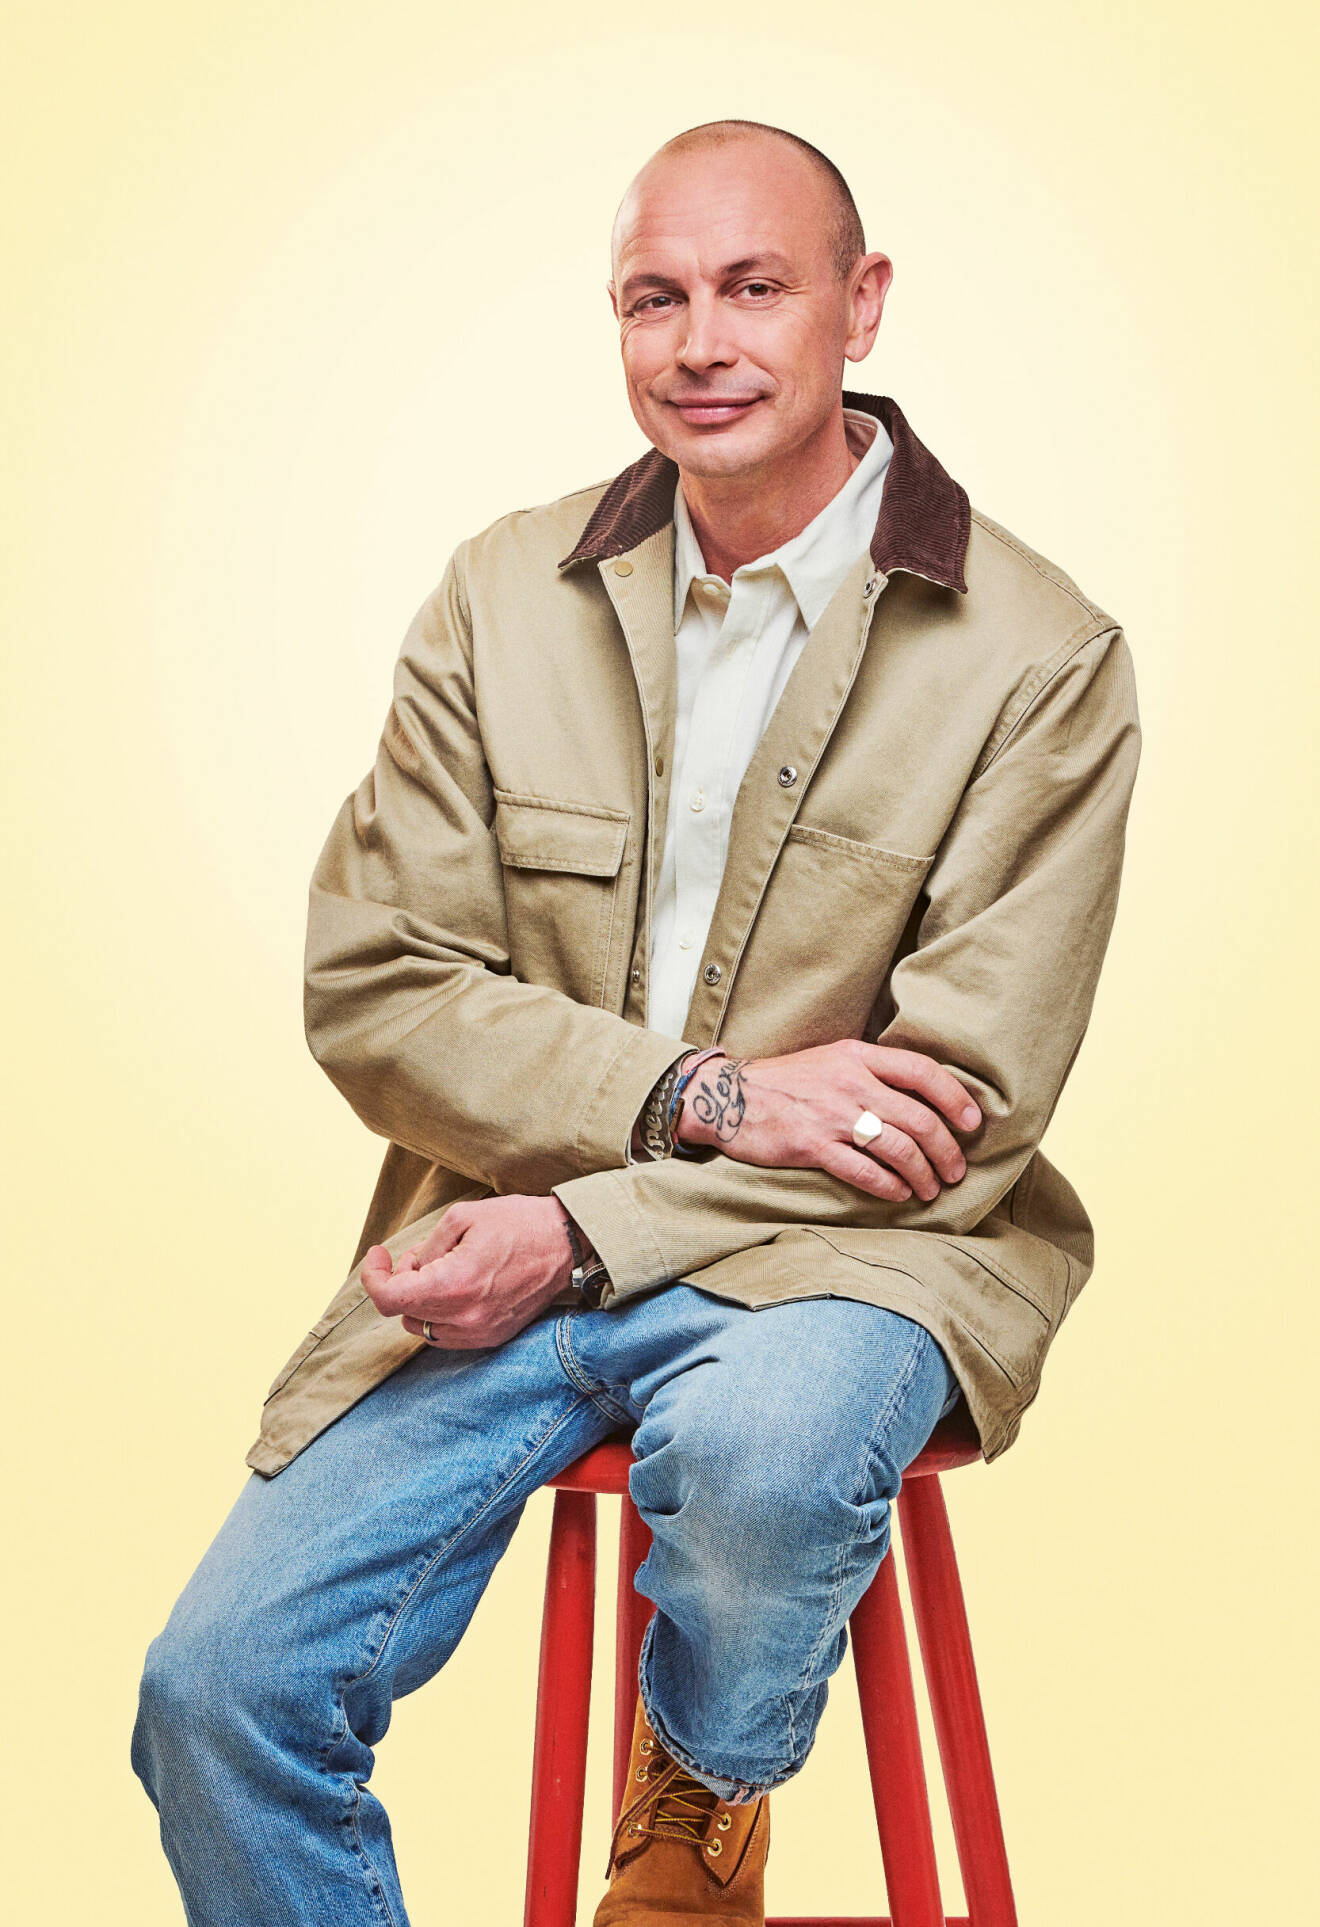 Artisten Petter sitter på en röd pall. Han är klädd i beige jacka, ljus skjorta och jeans.